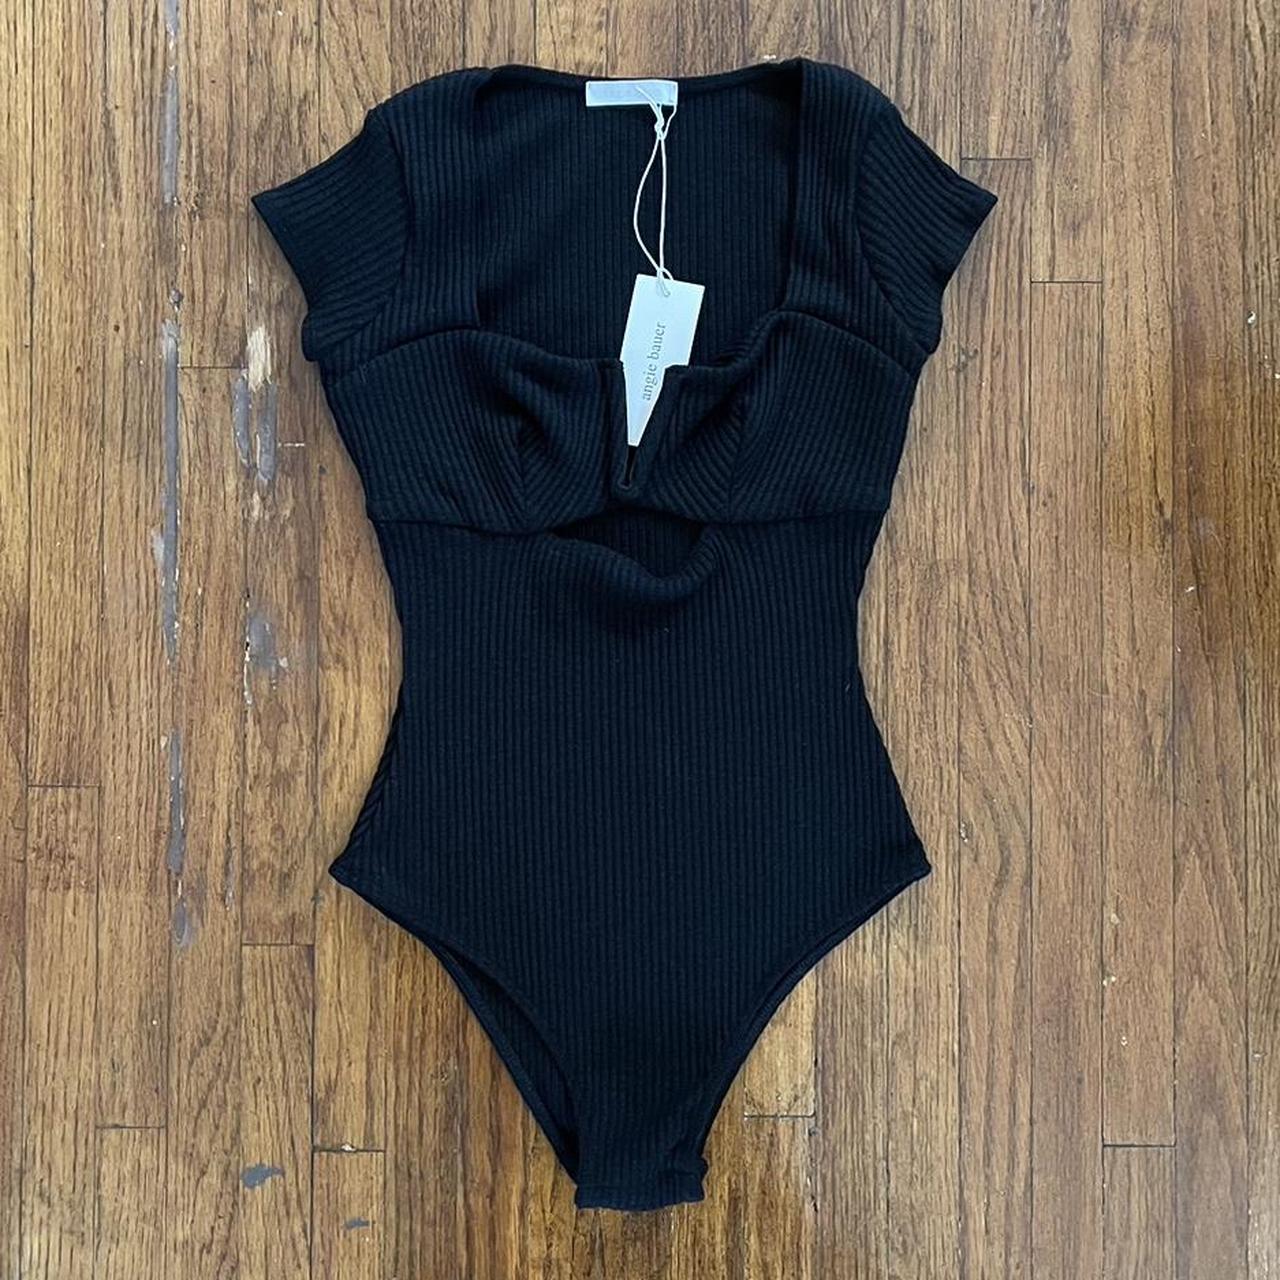 Urban Outfitters Women's Black Bodysuit | Depop